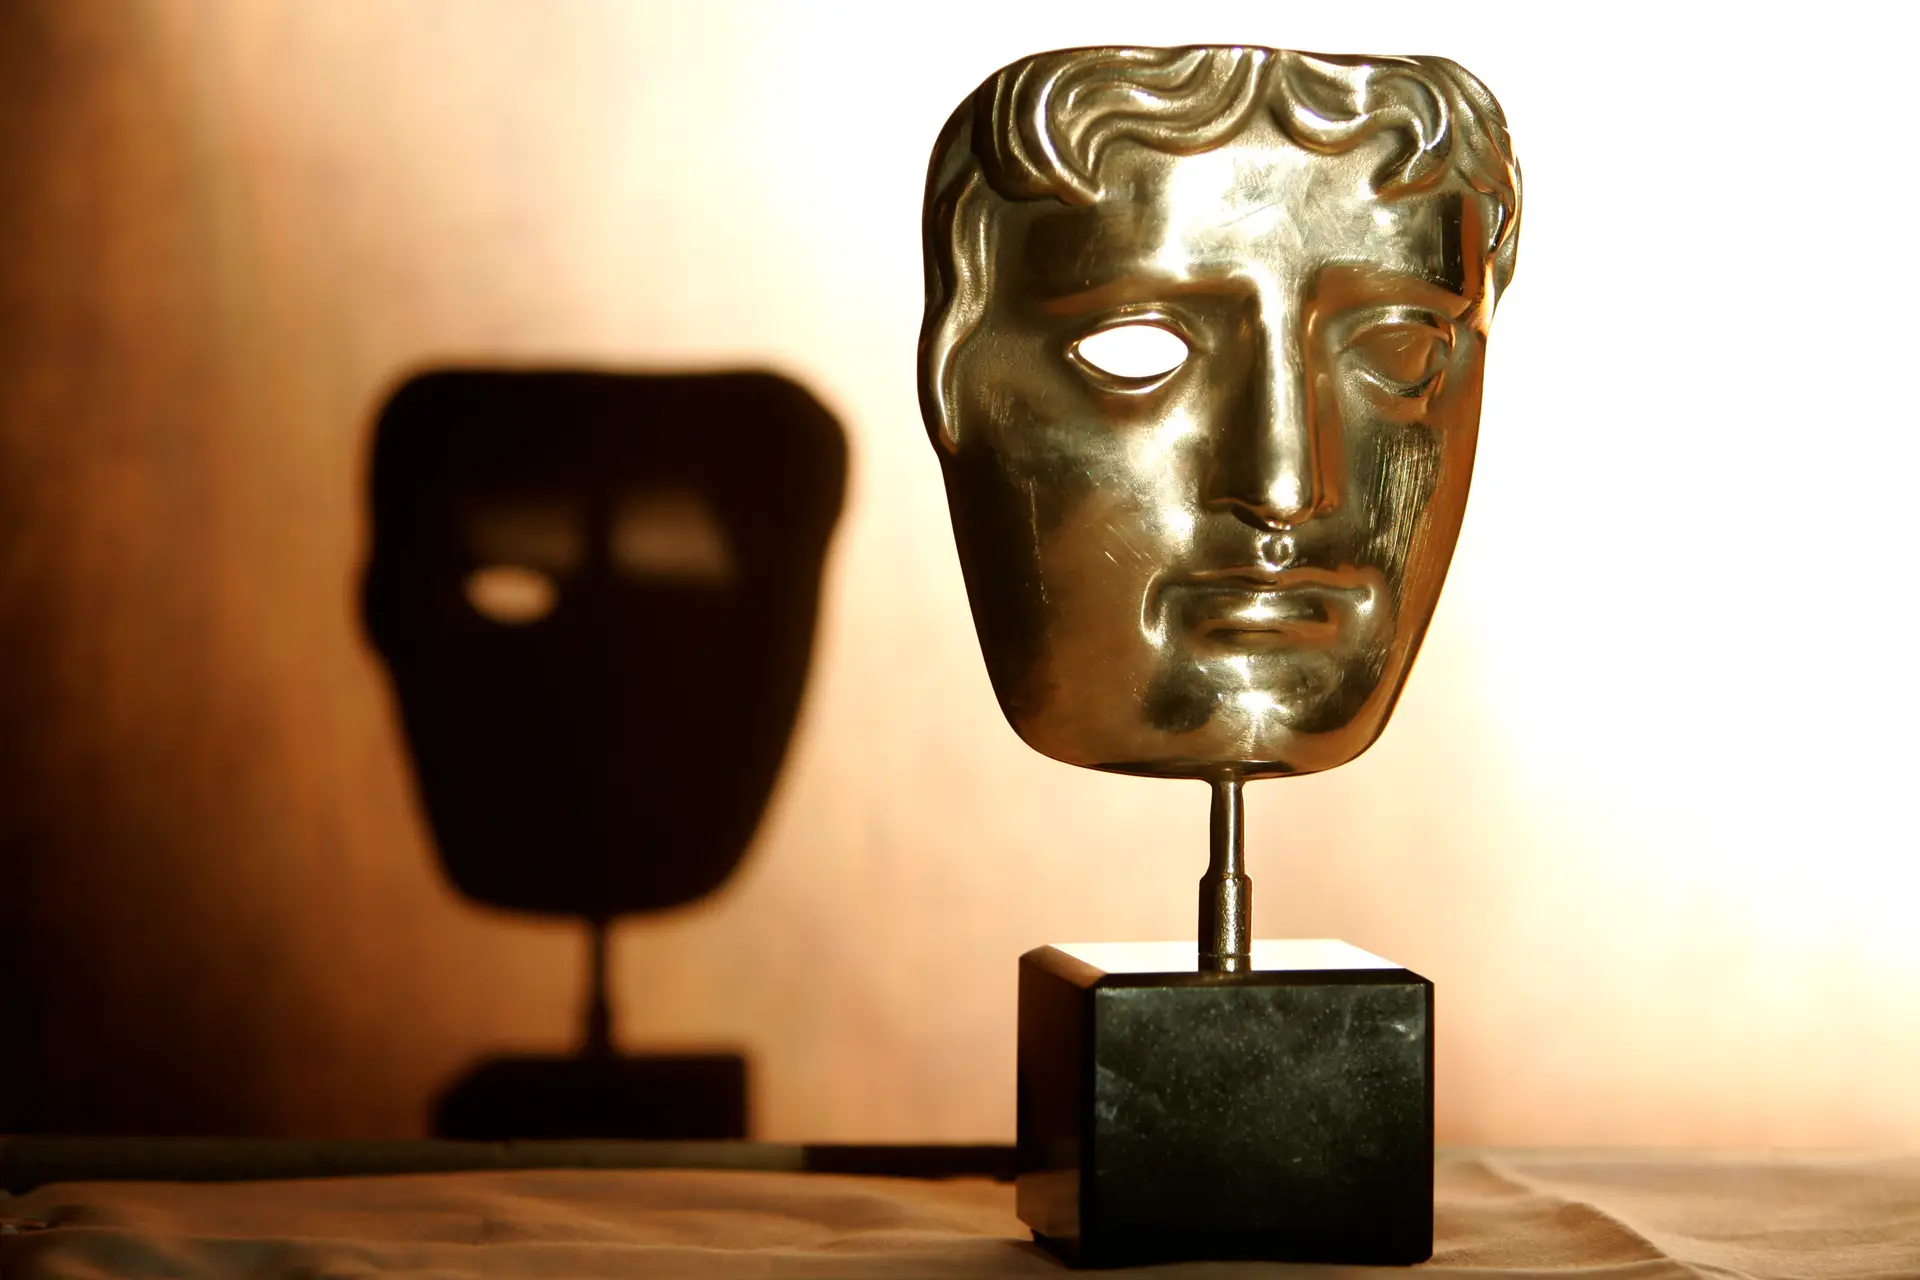 Prémios BAFTA: “A Oeste Nada de Novo” lidera com 14 nomeações; “Os  Espíritos de Inisherin” é outro dos favoritos da Academia Britânica -  Expresso